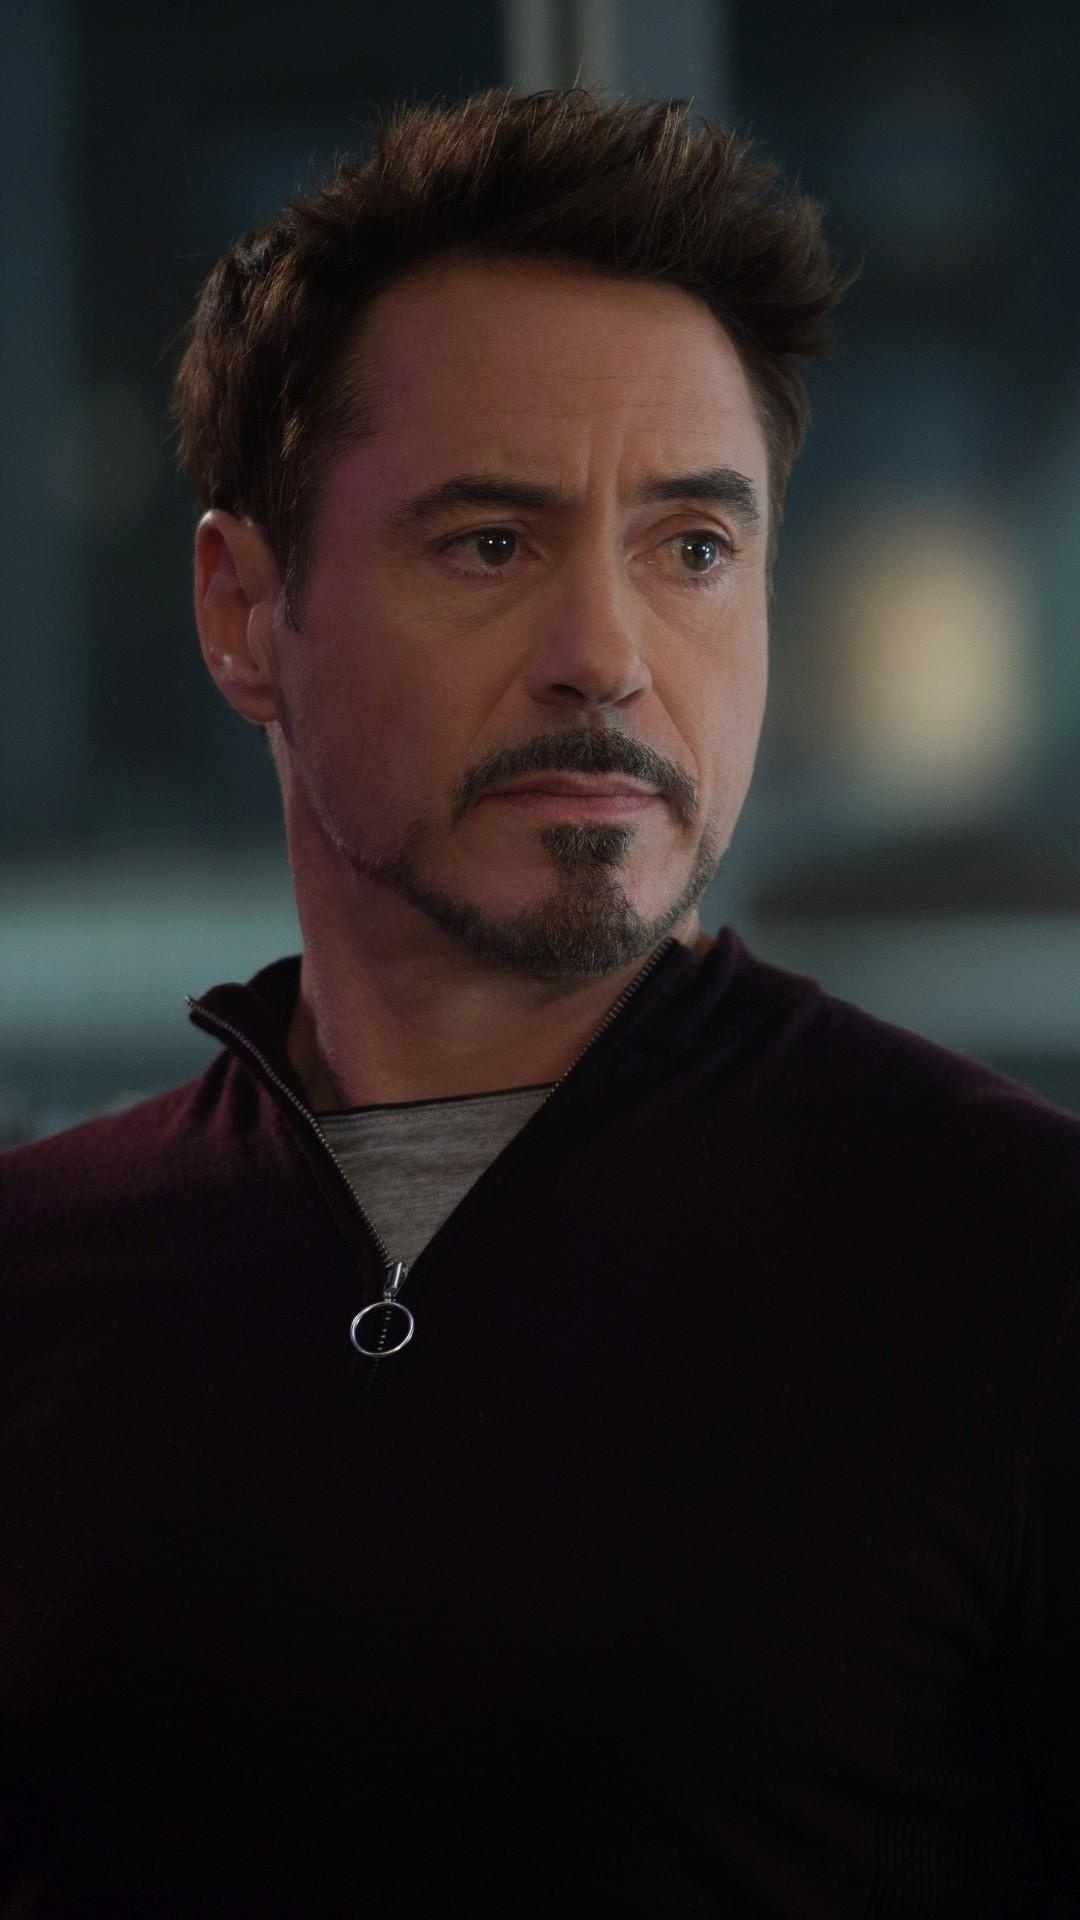 Robert Downey Jr.: The winner of 3 Golden Globe Awards, Anthony Edward “Tony” Stark. 1080x1920 Full HD Wallpaper.